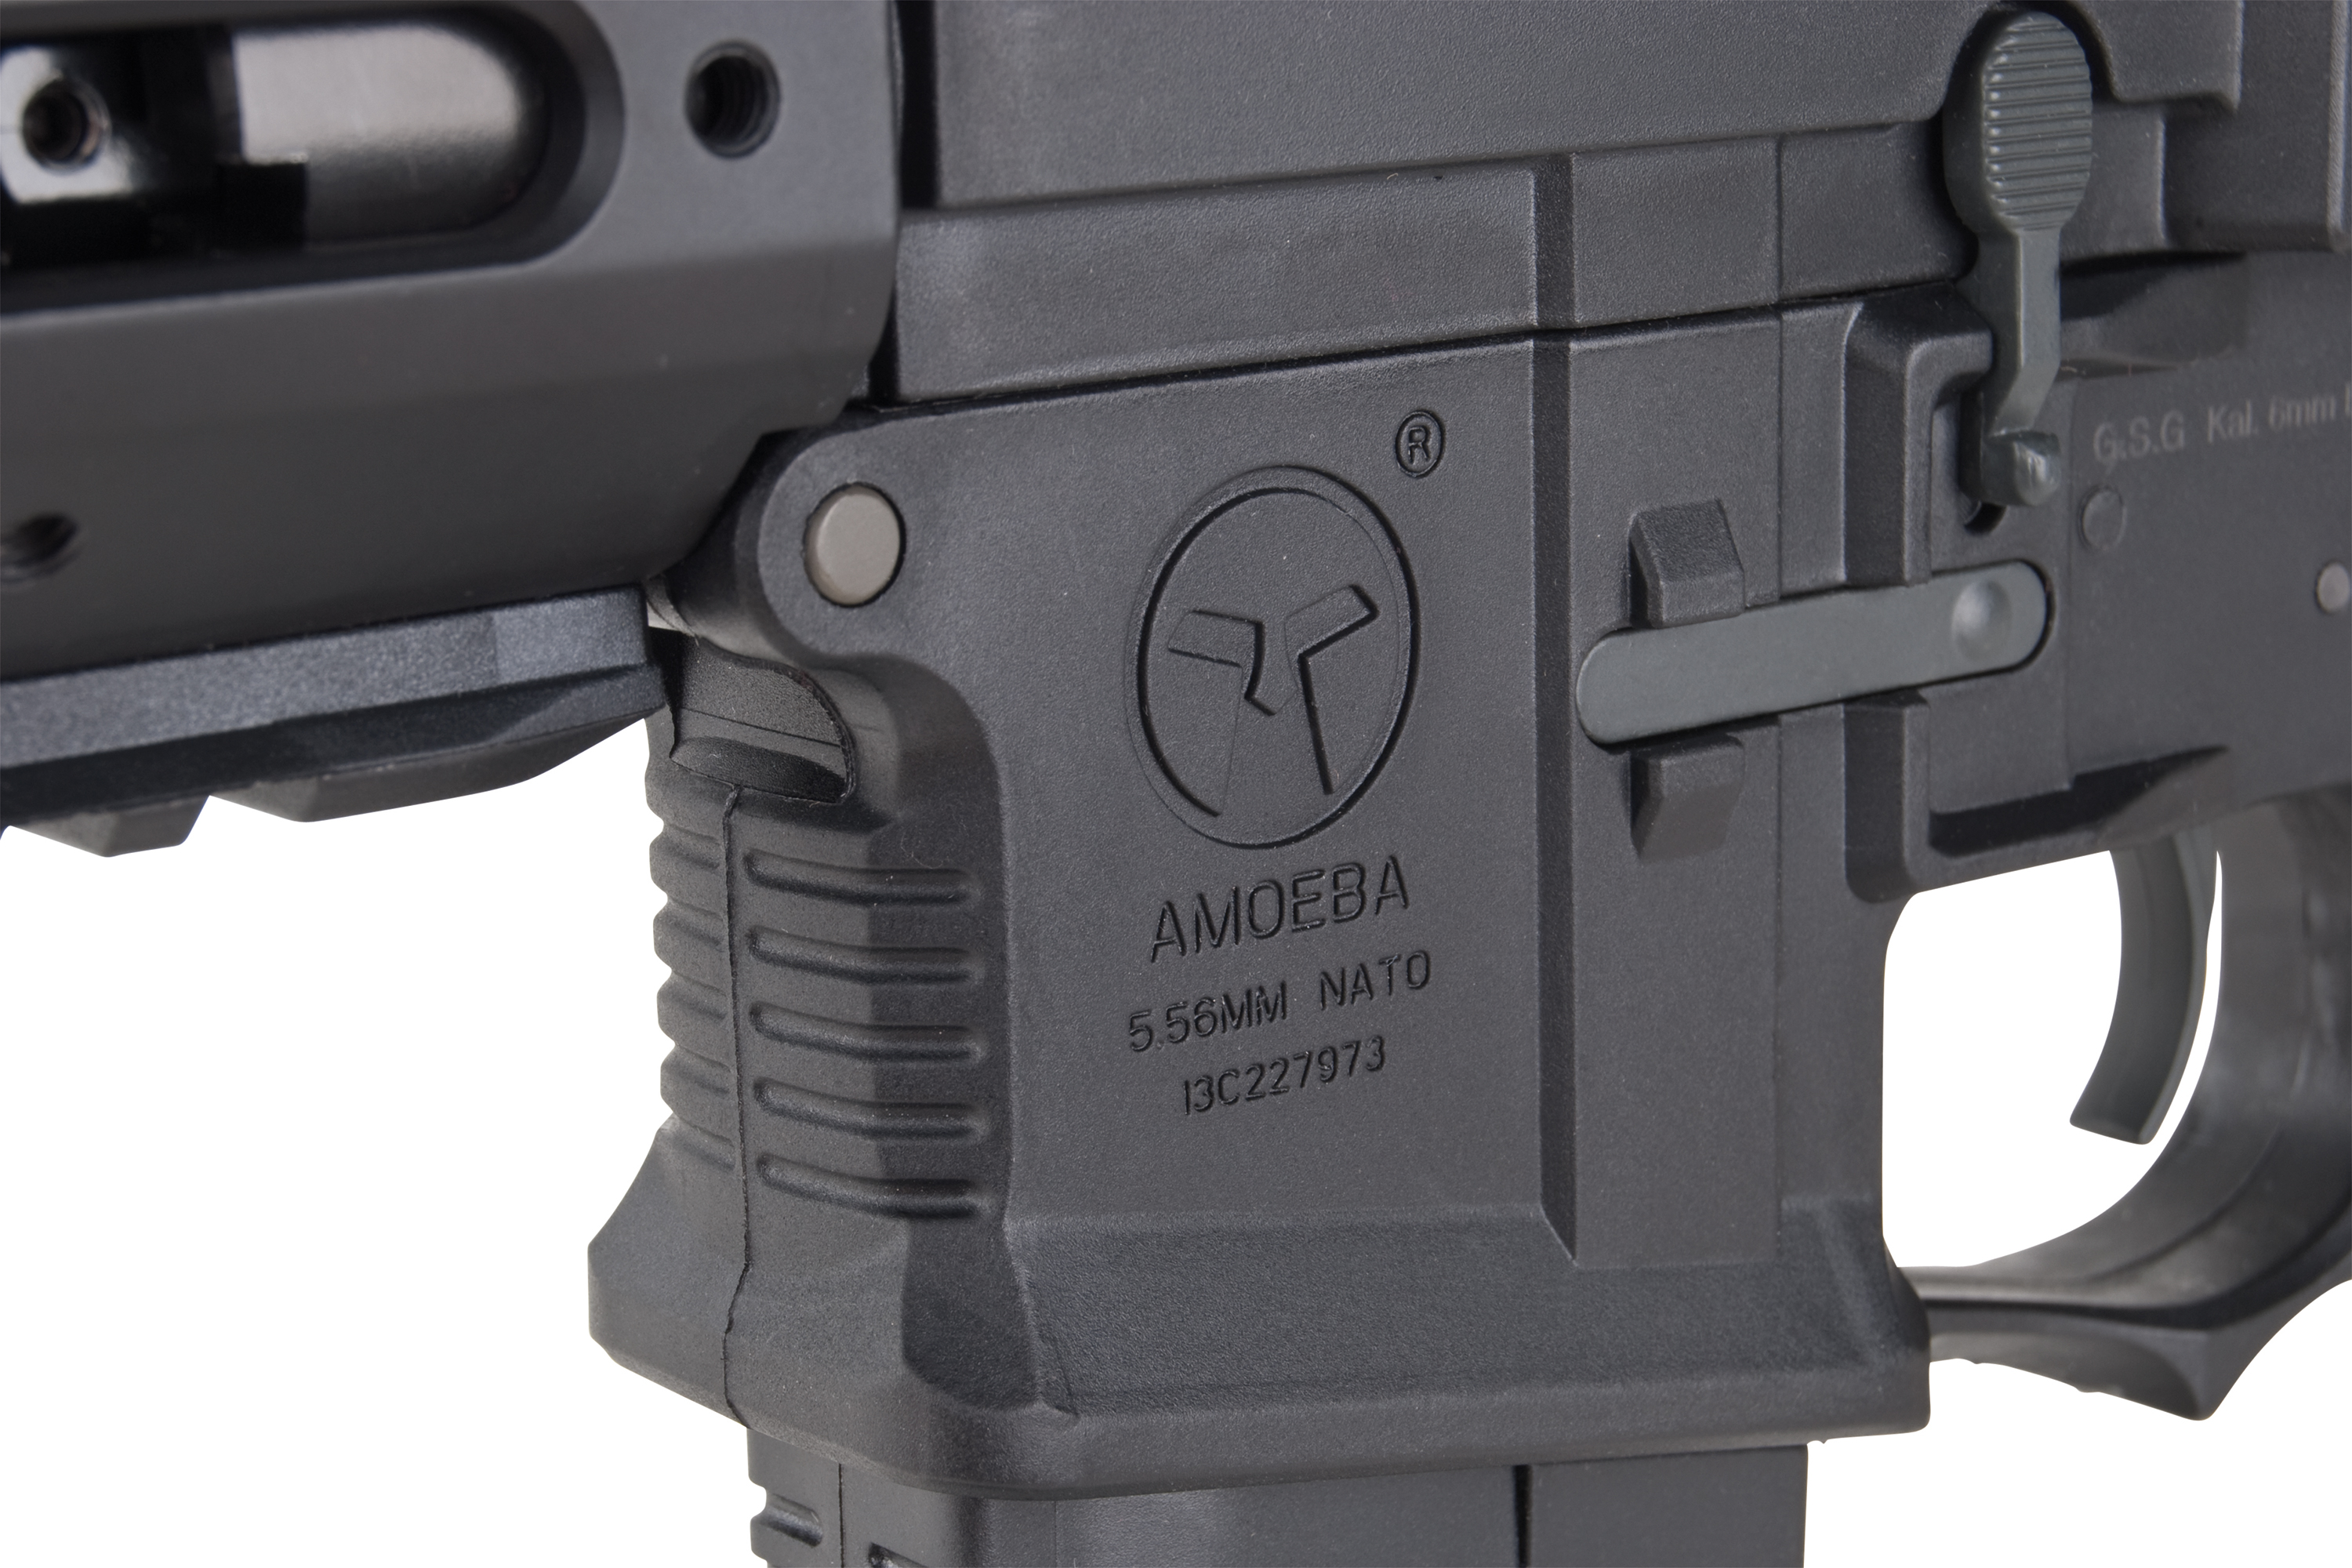 Amoeba M4 014 Schwarz 6mm - Airsoft S-AEG